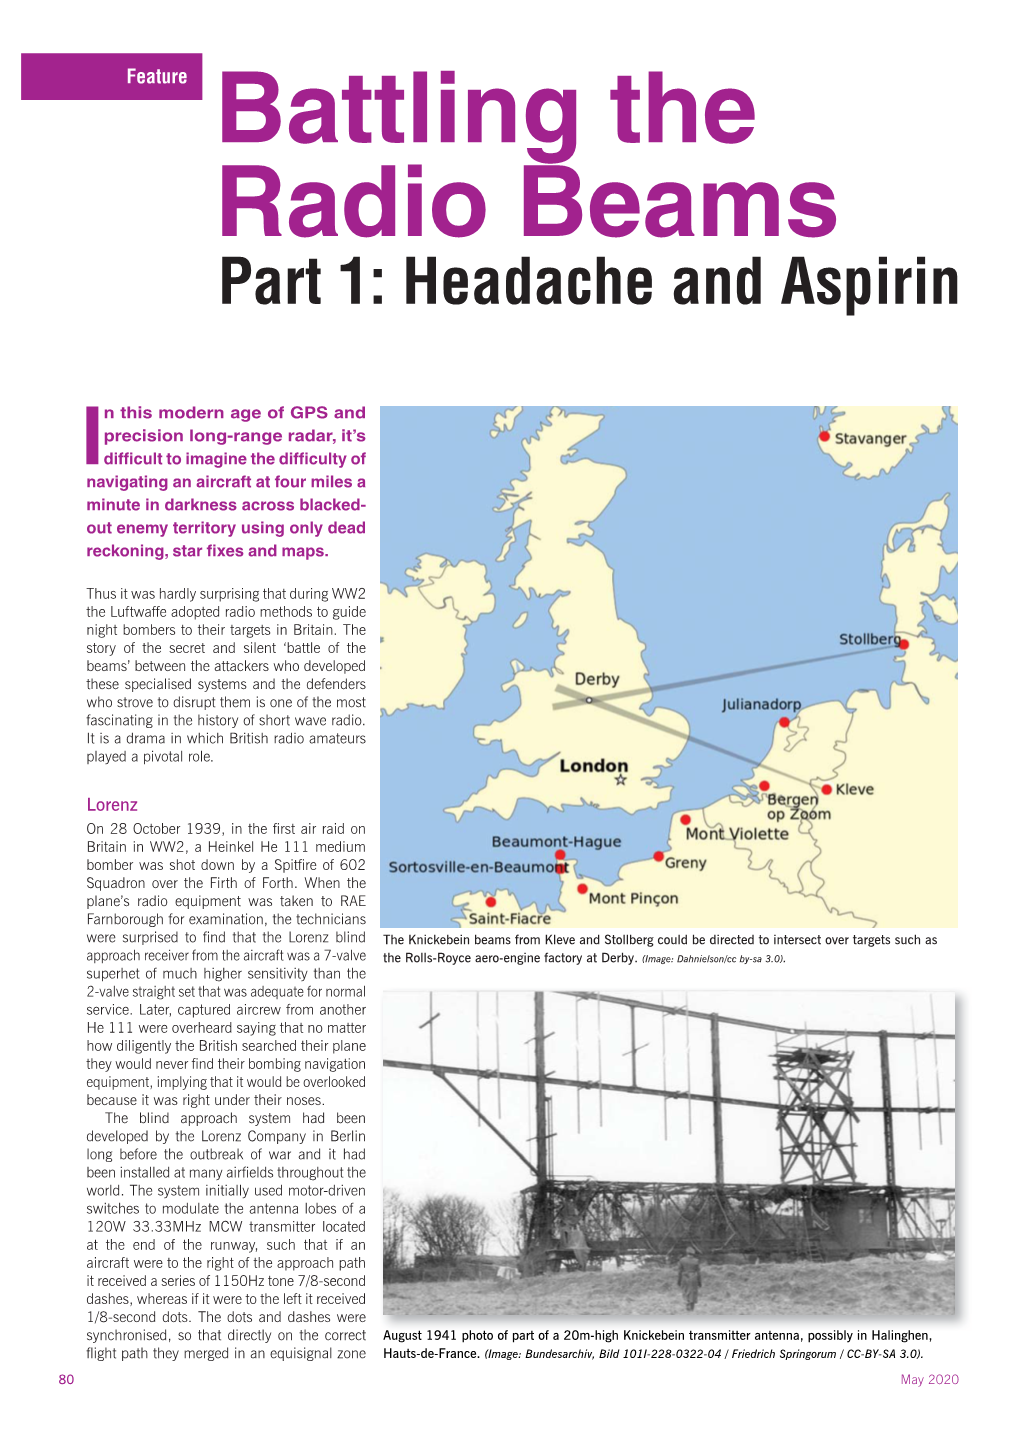 Battling the Radio Beams Part 1: Headache and Aspirin